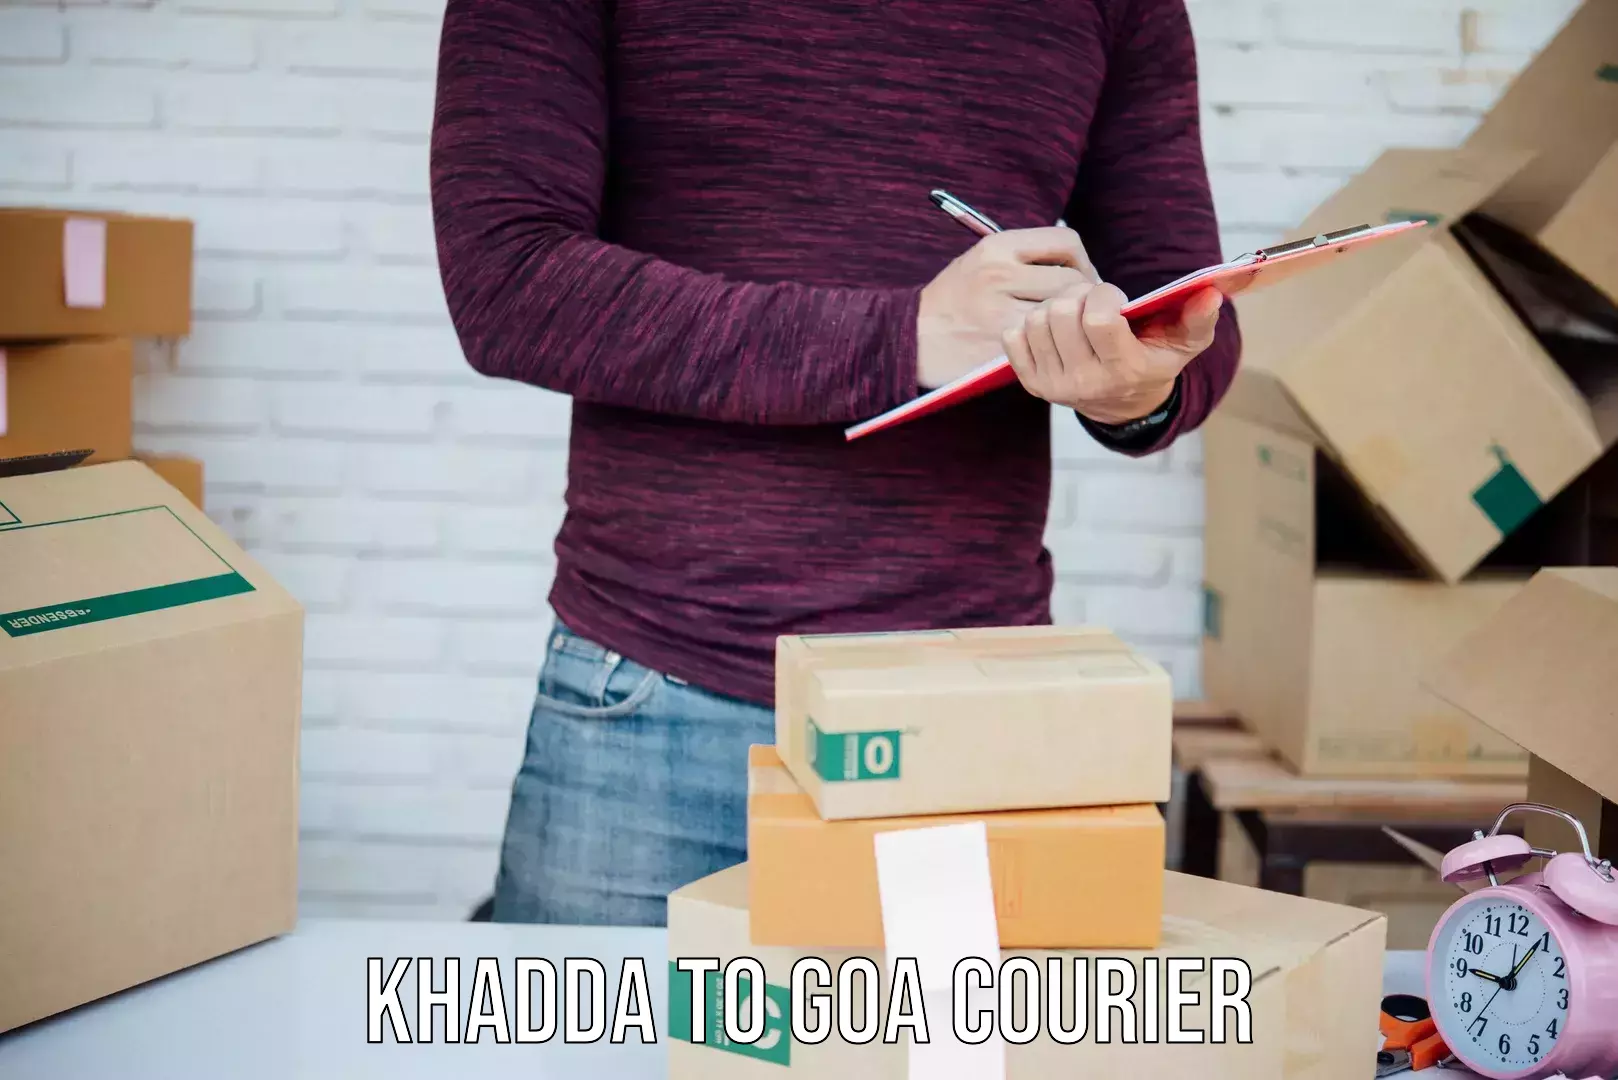 Business shipping needs Khadda to Bicholim